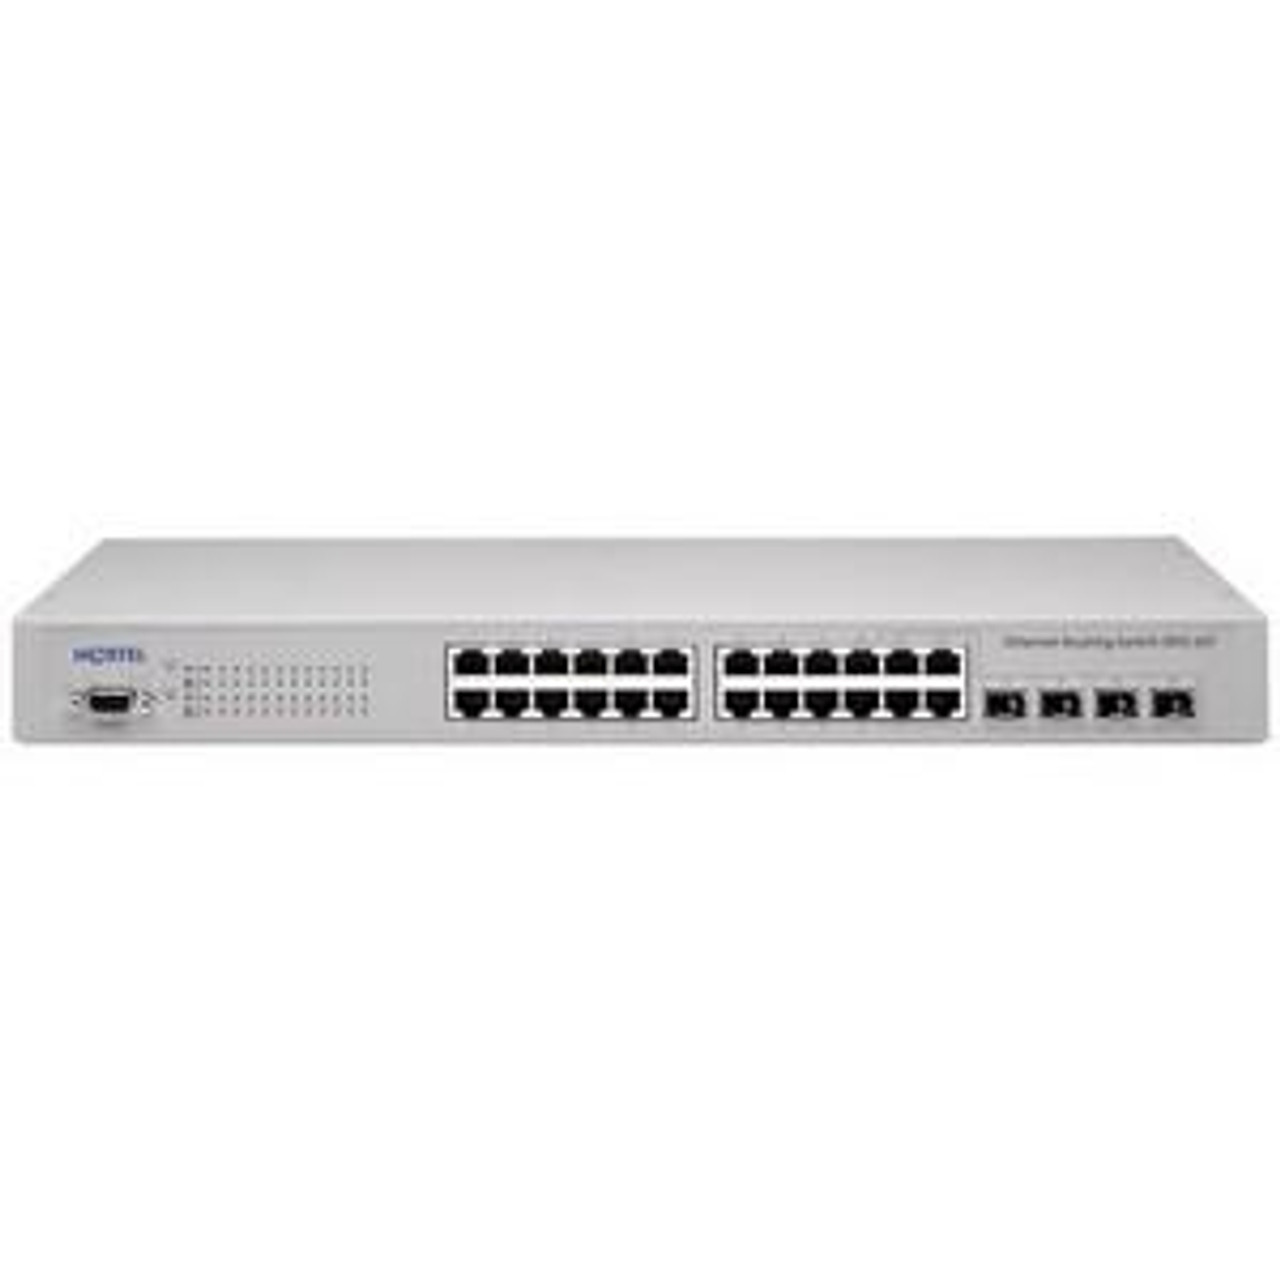 AL1001B08-E5 Nortel Ethernet Routing Switch 3510-24T 24 Ports EN Fast EN Gigabit EN 10Base-T 100Base-TX 1000Base-T + 4 x Shared SFP (empty) 1U (Refurb